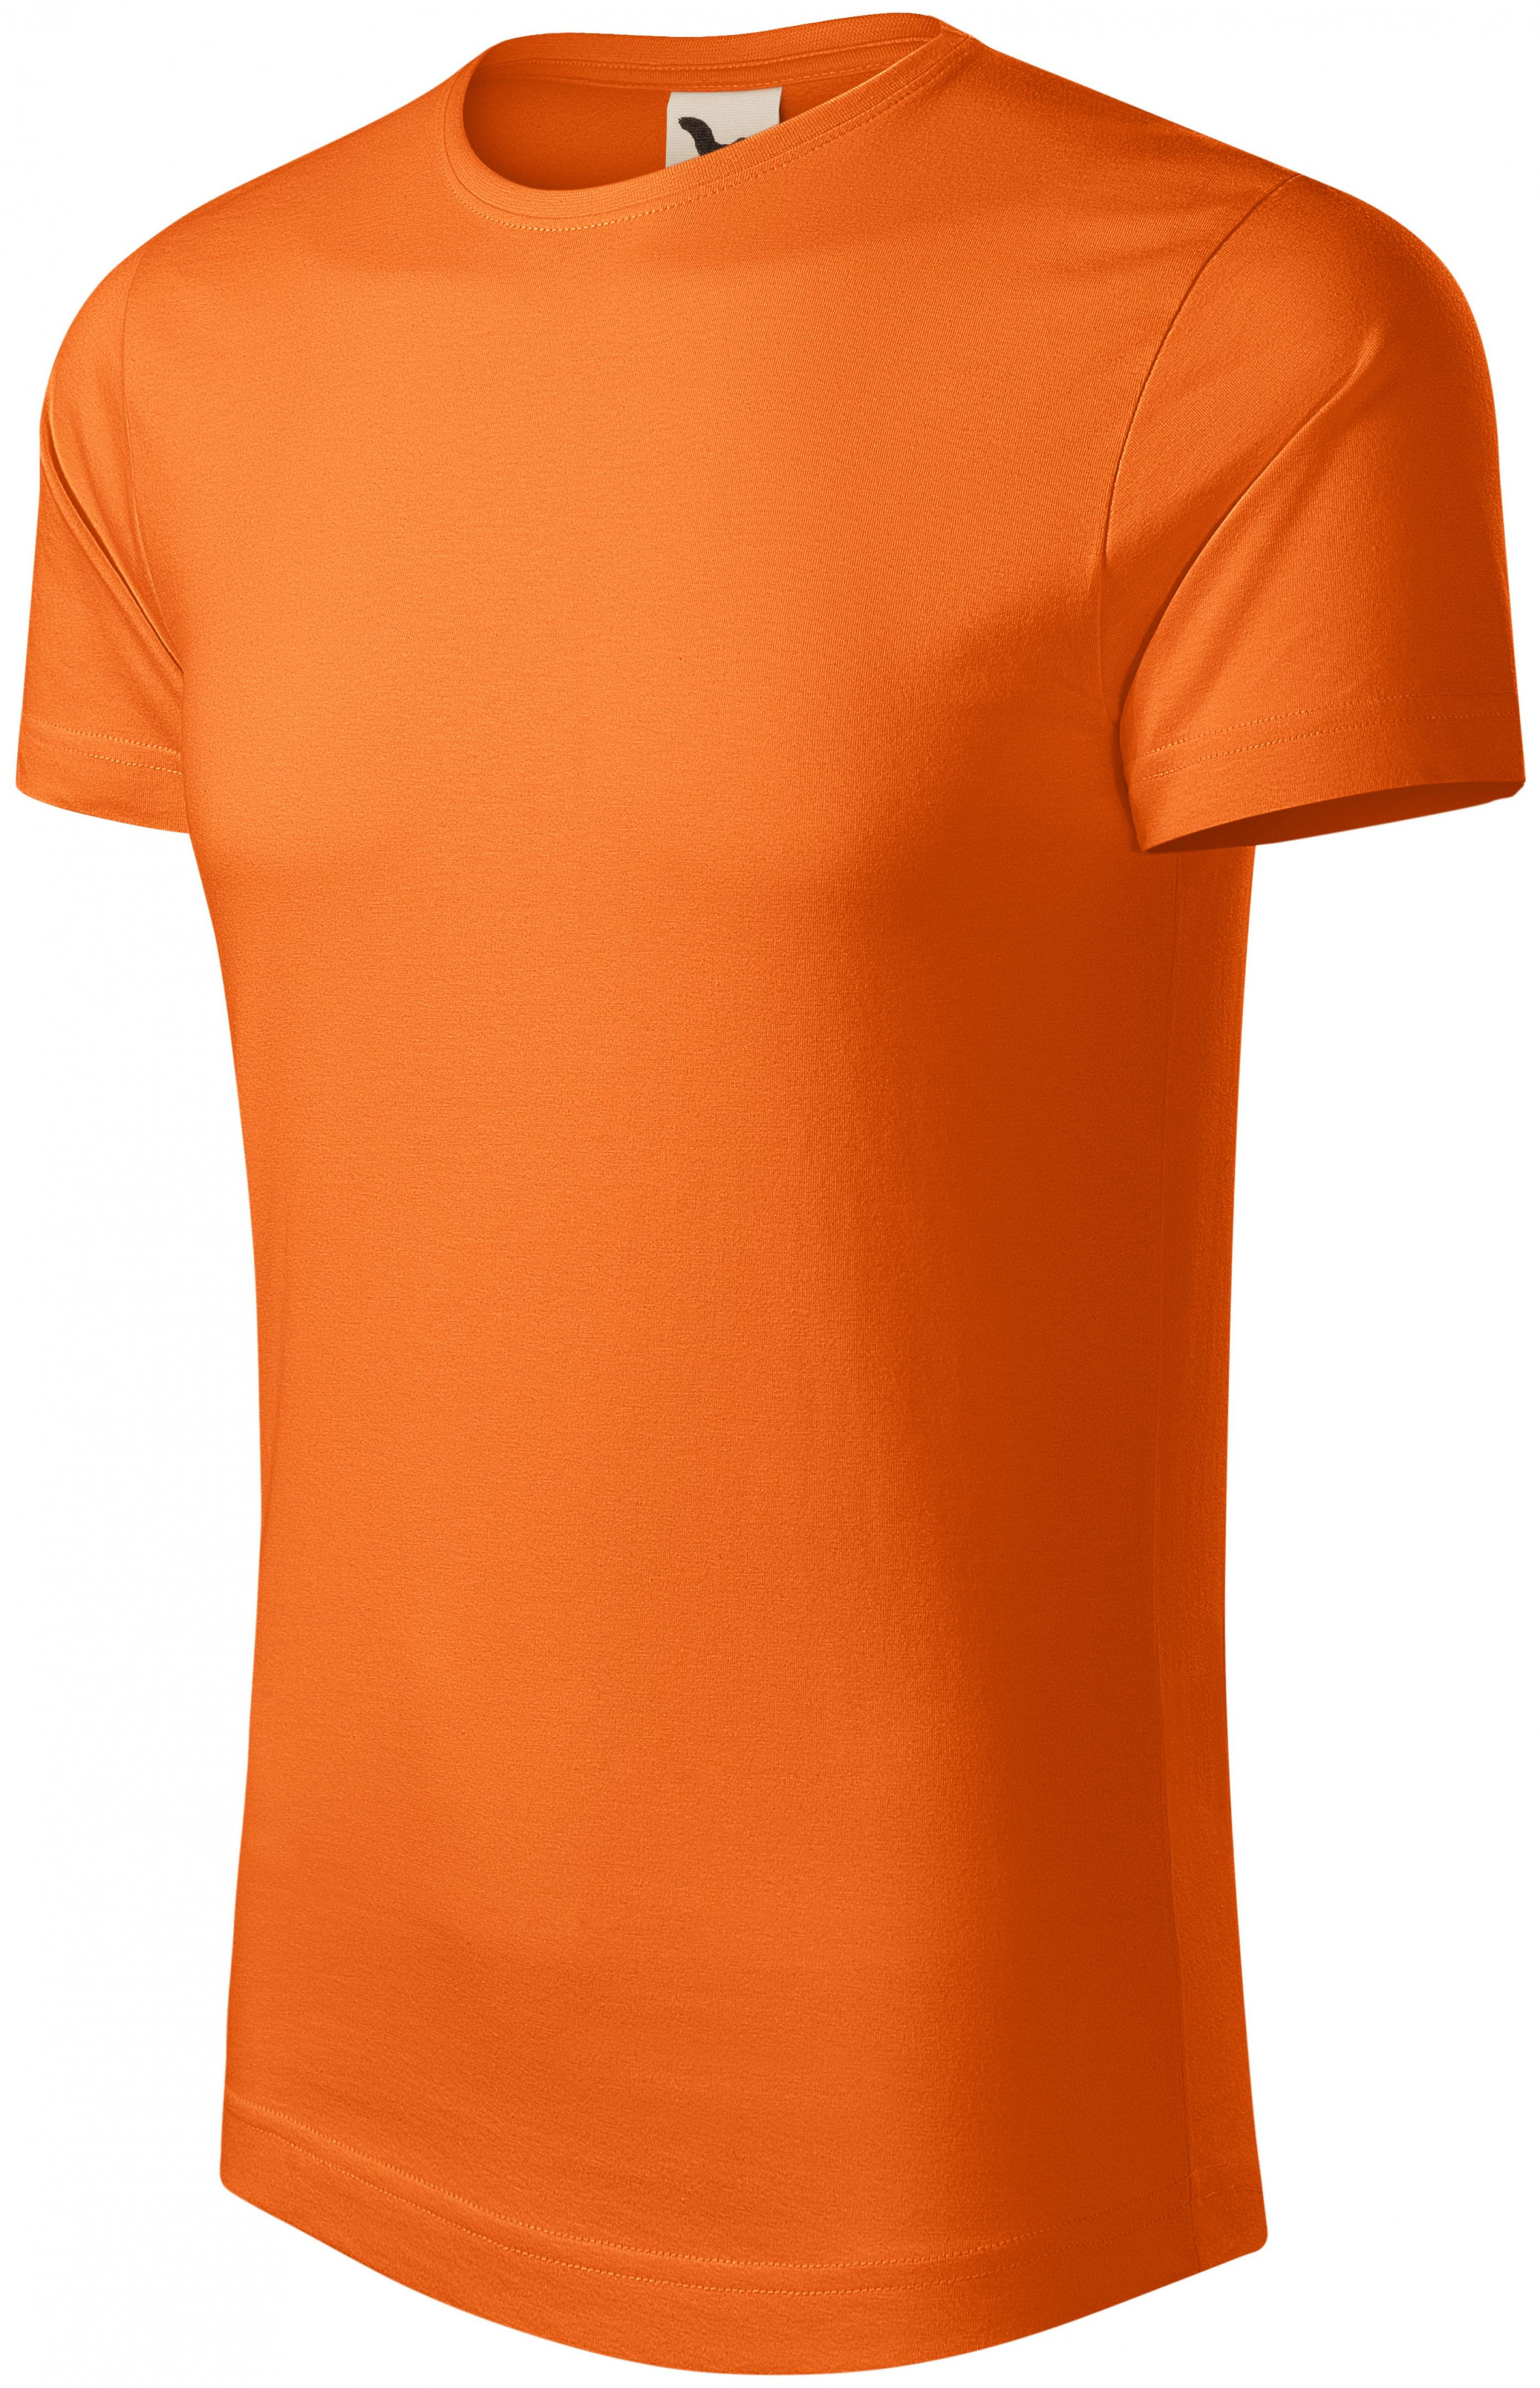 Pánske tričko, organická bavlna, oranžová, XL